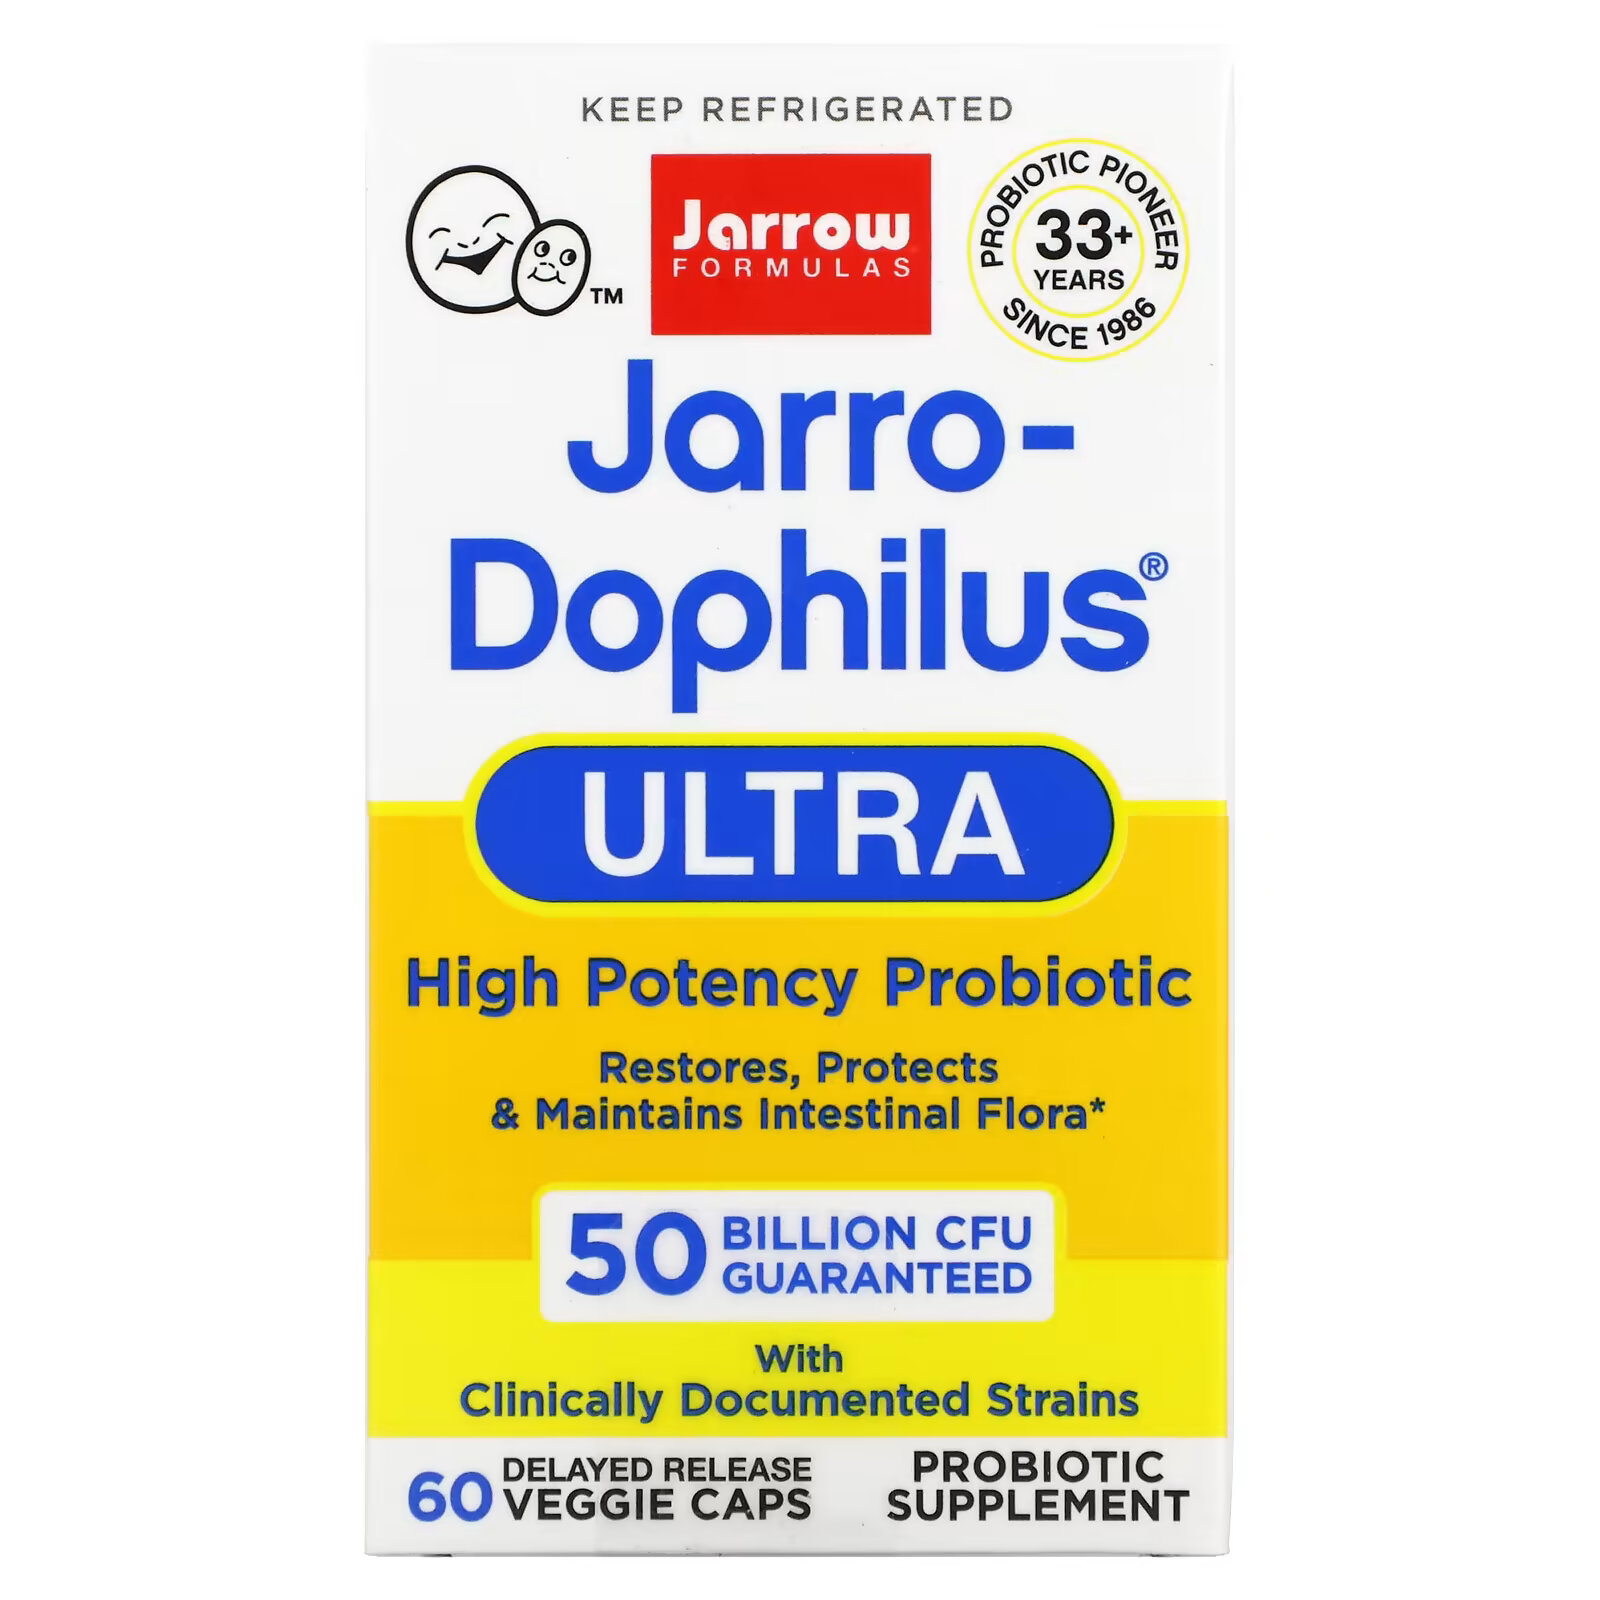 пробиотики для детей jarrow formulas jarro dophilus baby 3 billion cfu 60 г Jarrow Formulas, Jarro-Dophilus Ultra, 50 миллиардов, 60 вегетарианских капсул